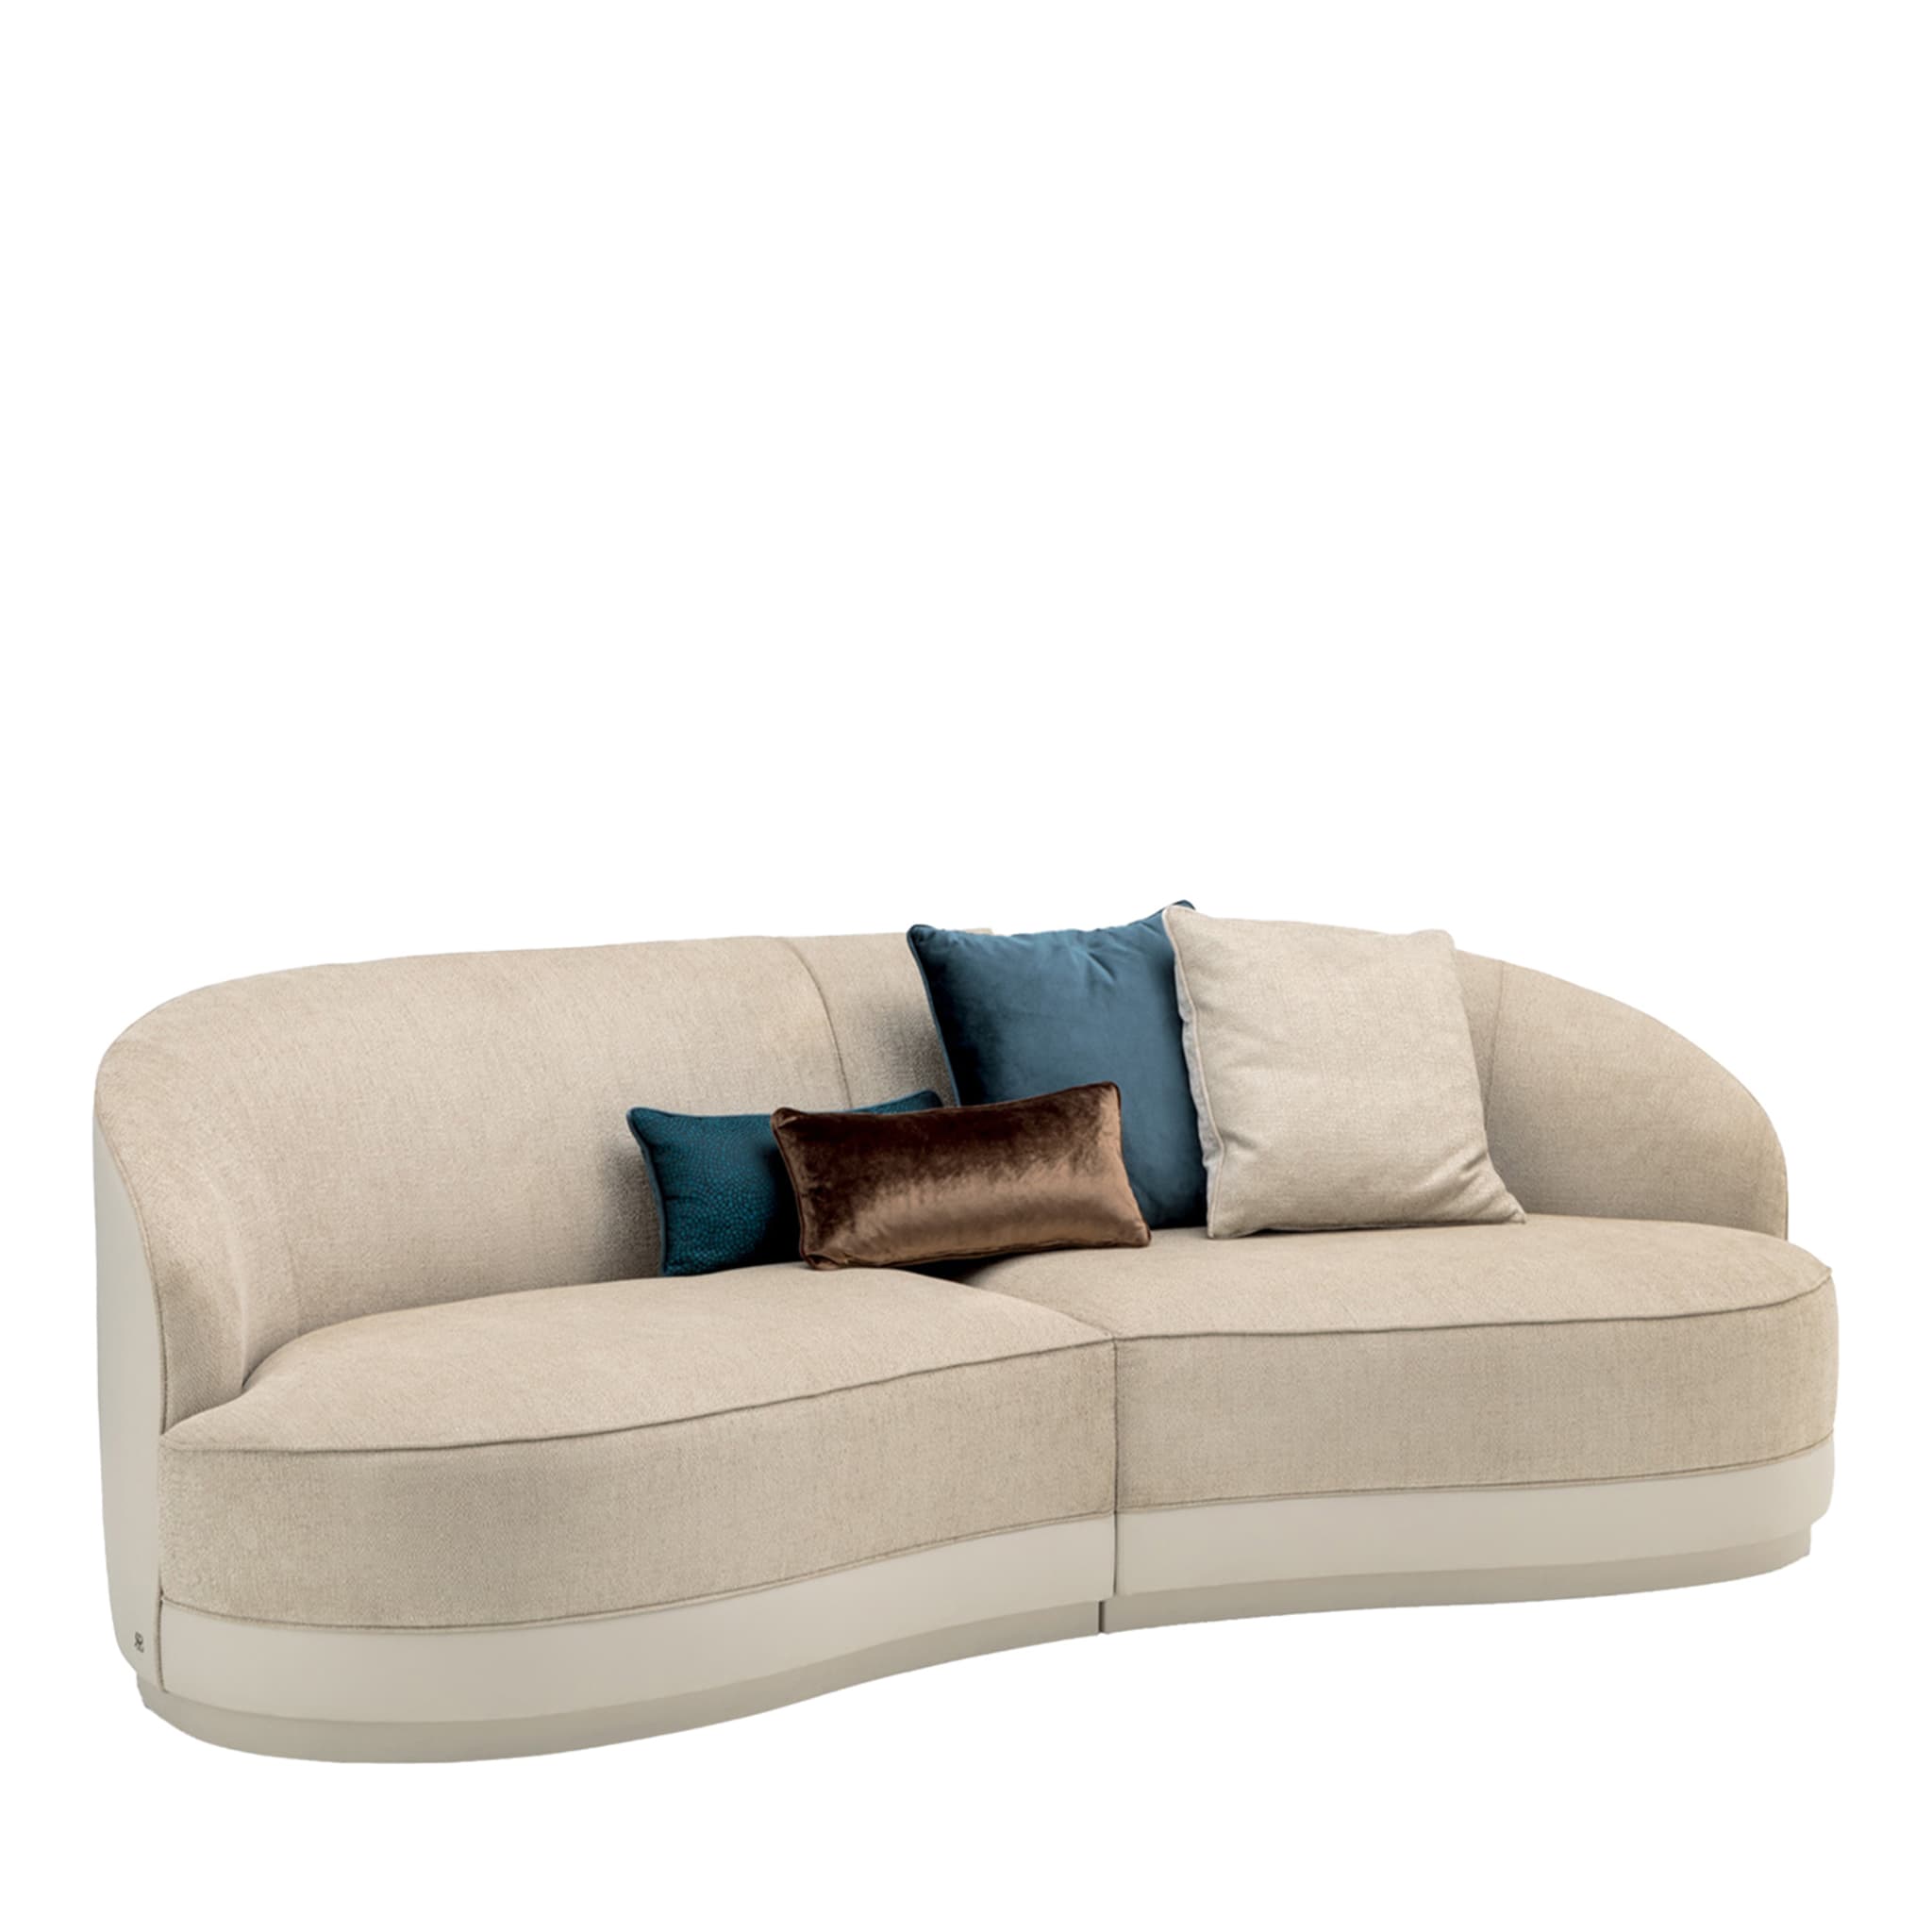 Prestige Modular Sofa - White #4 - Main view